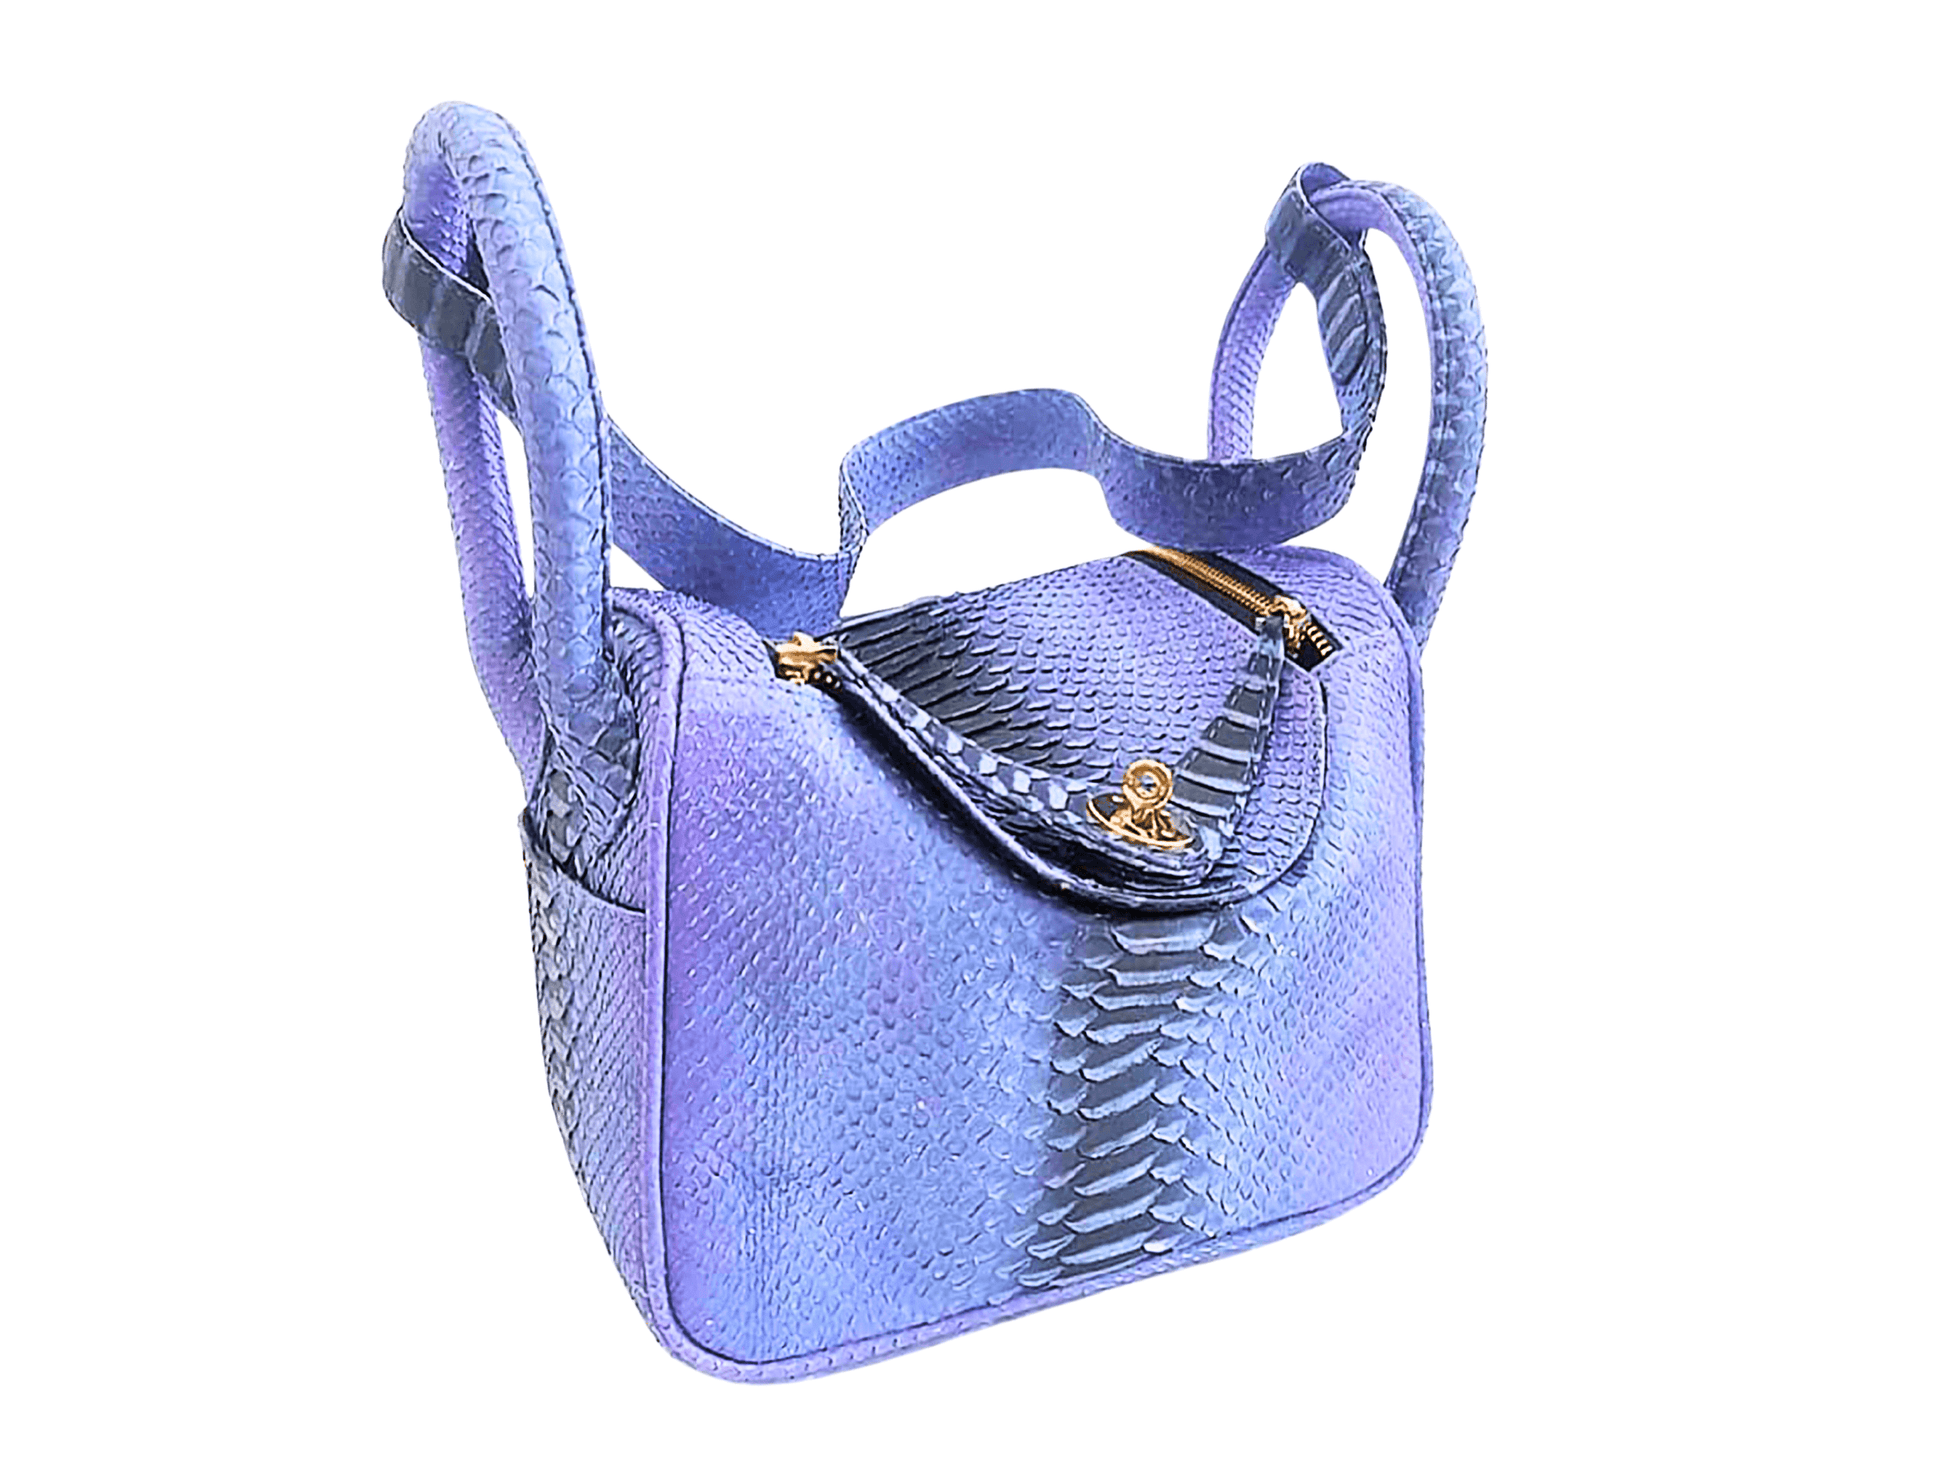 Hermes Snakeskin Lindy Bag 25 Wild Blue Yonder Python Jacket by LFM Fashion